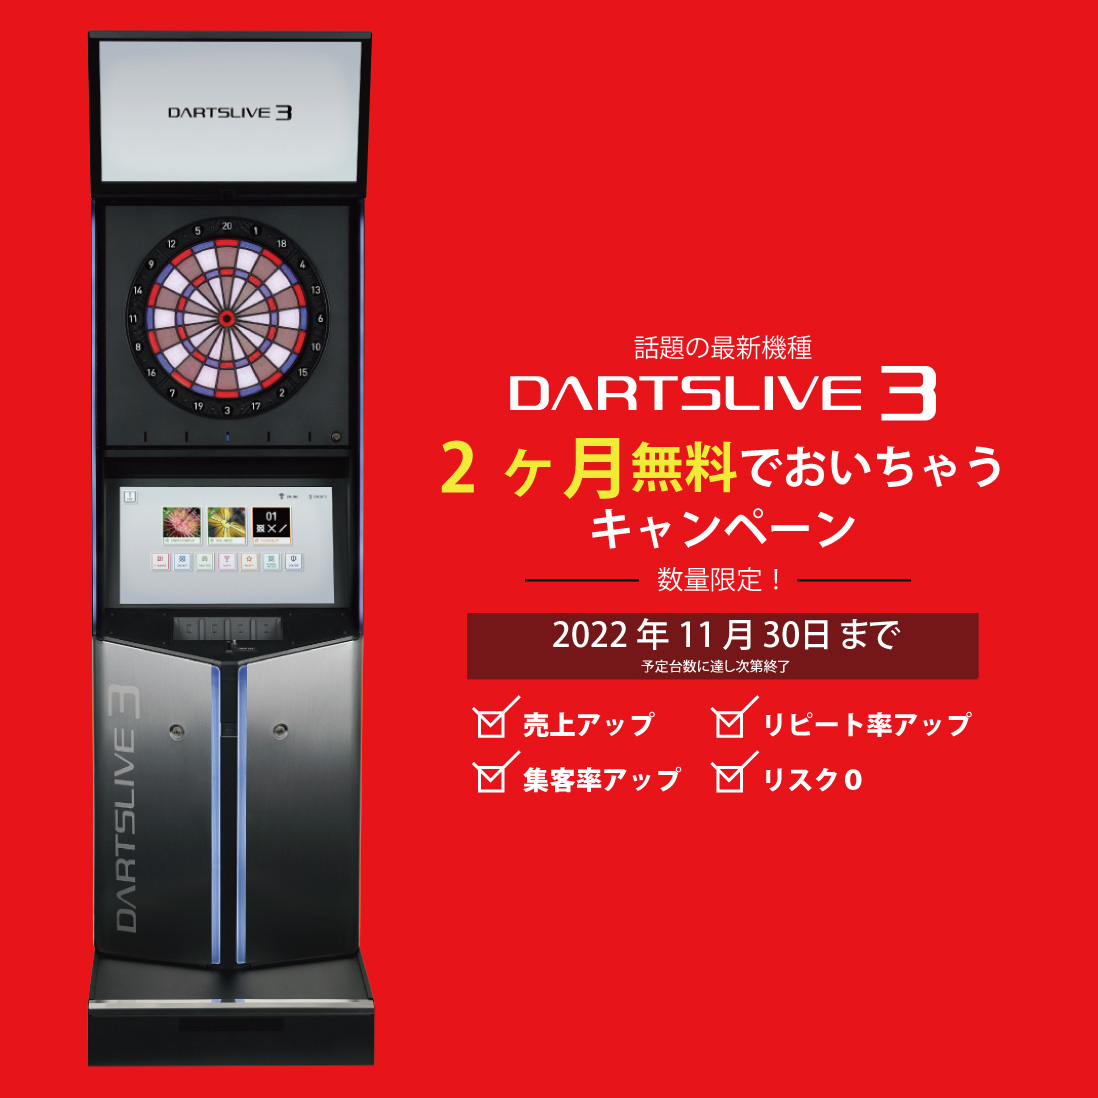 ダーツマシンのレンタル 業界最安値で設置 01ダーツジャパン